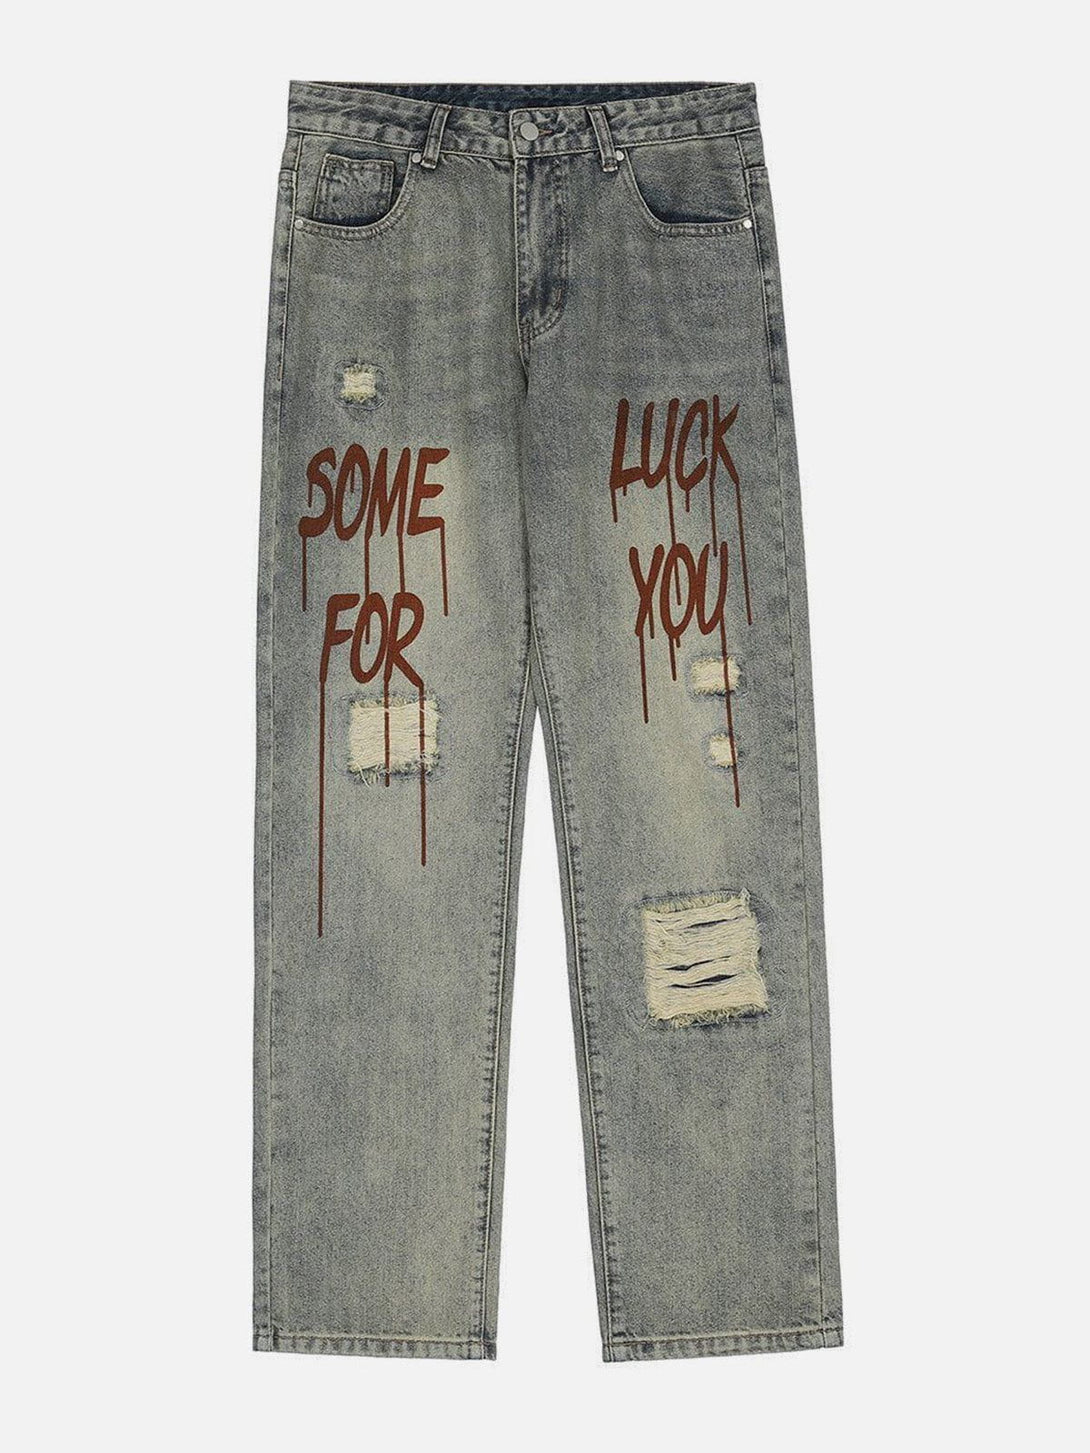 Majesda® - Broken Letters Jeans outfit ideas streetwear fashion